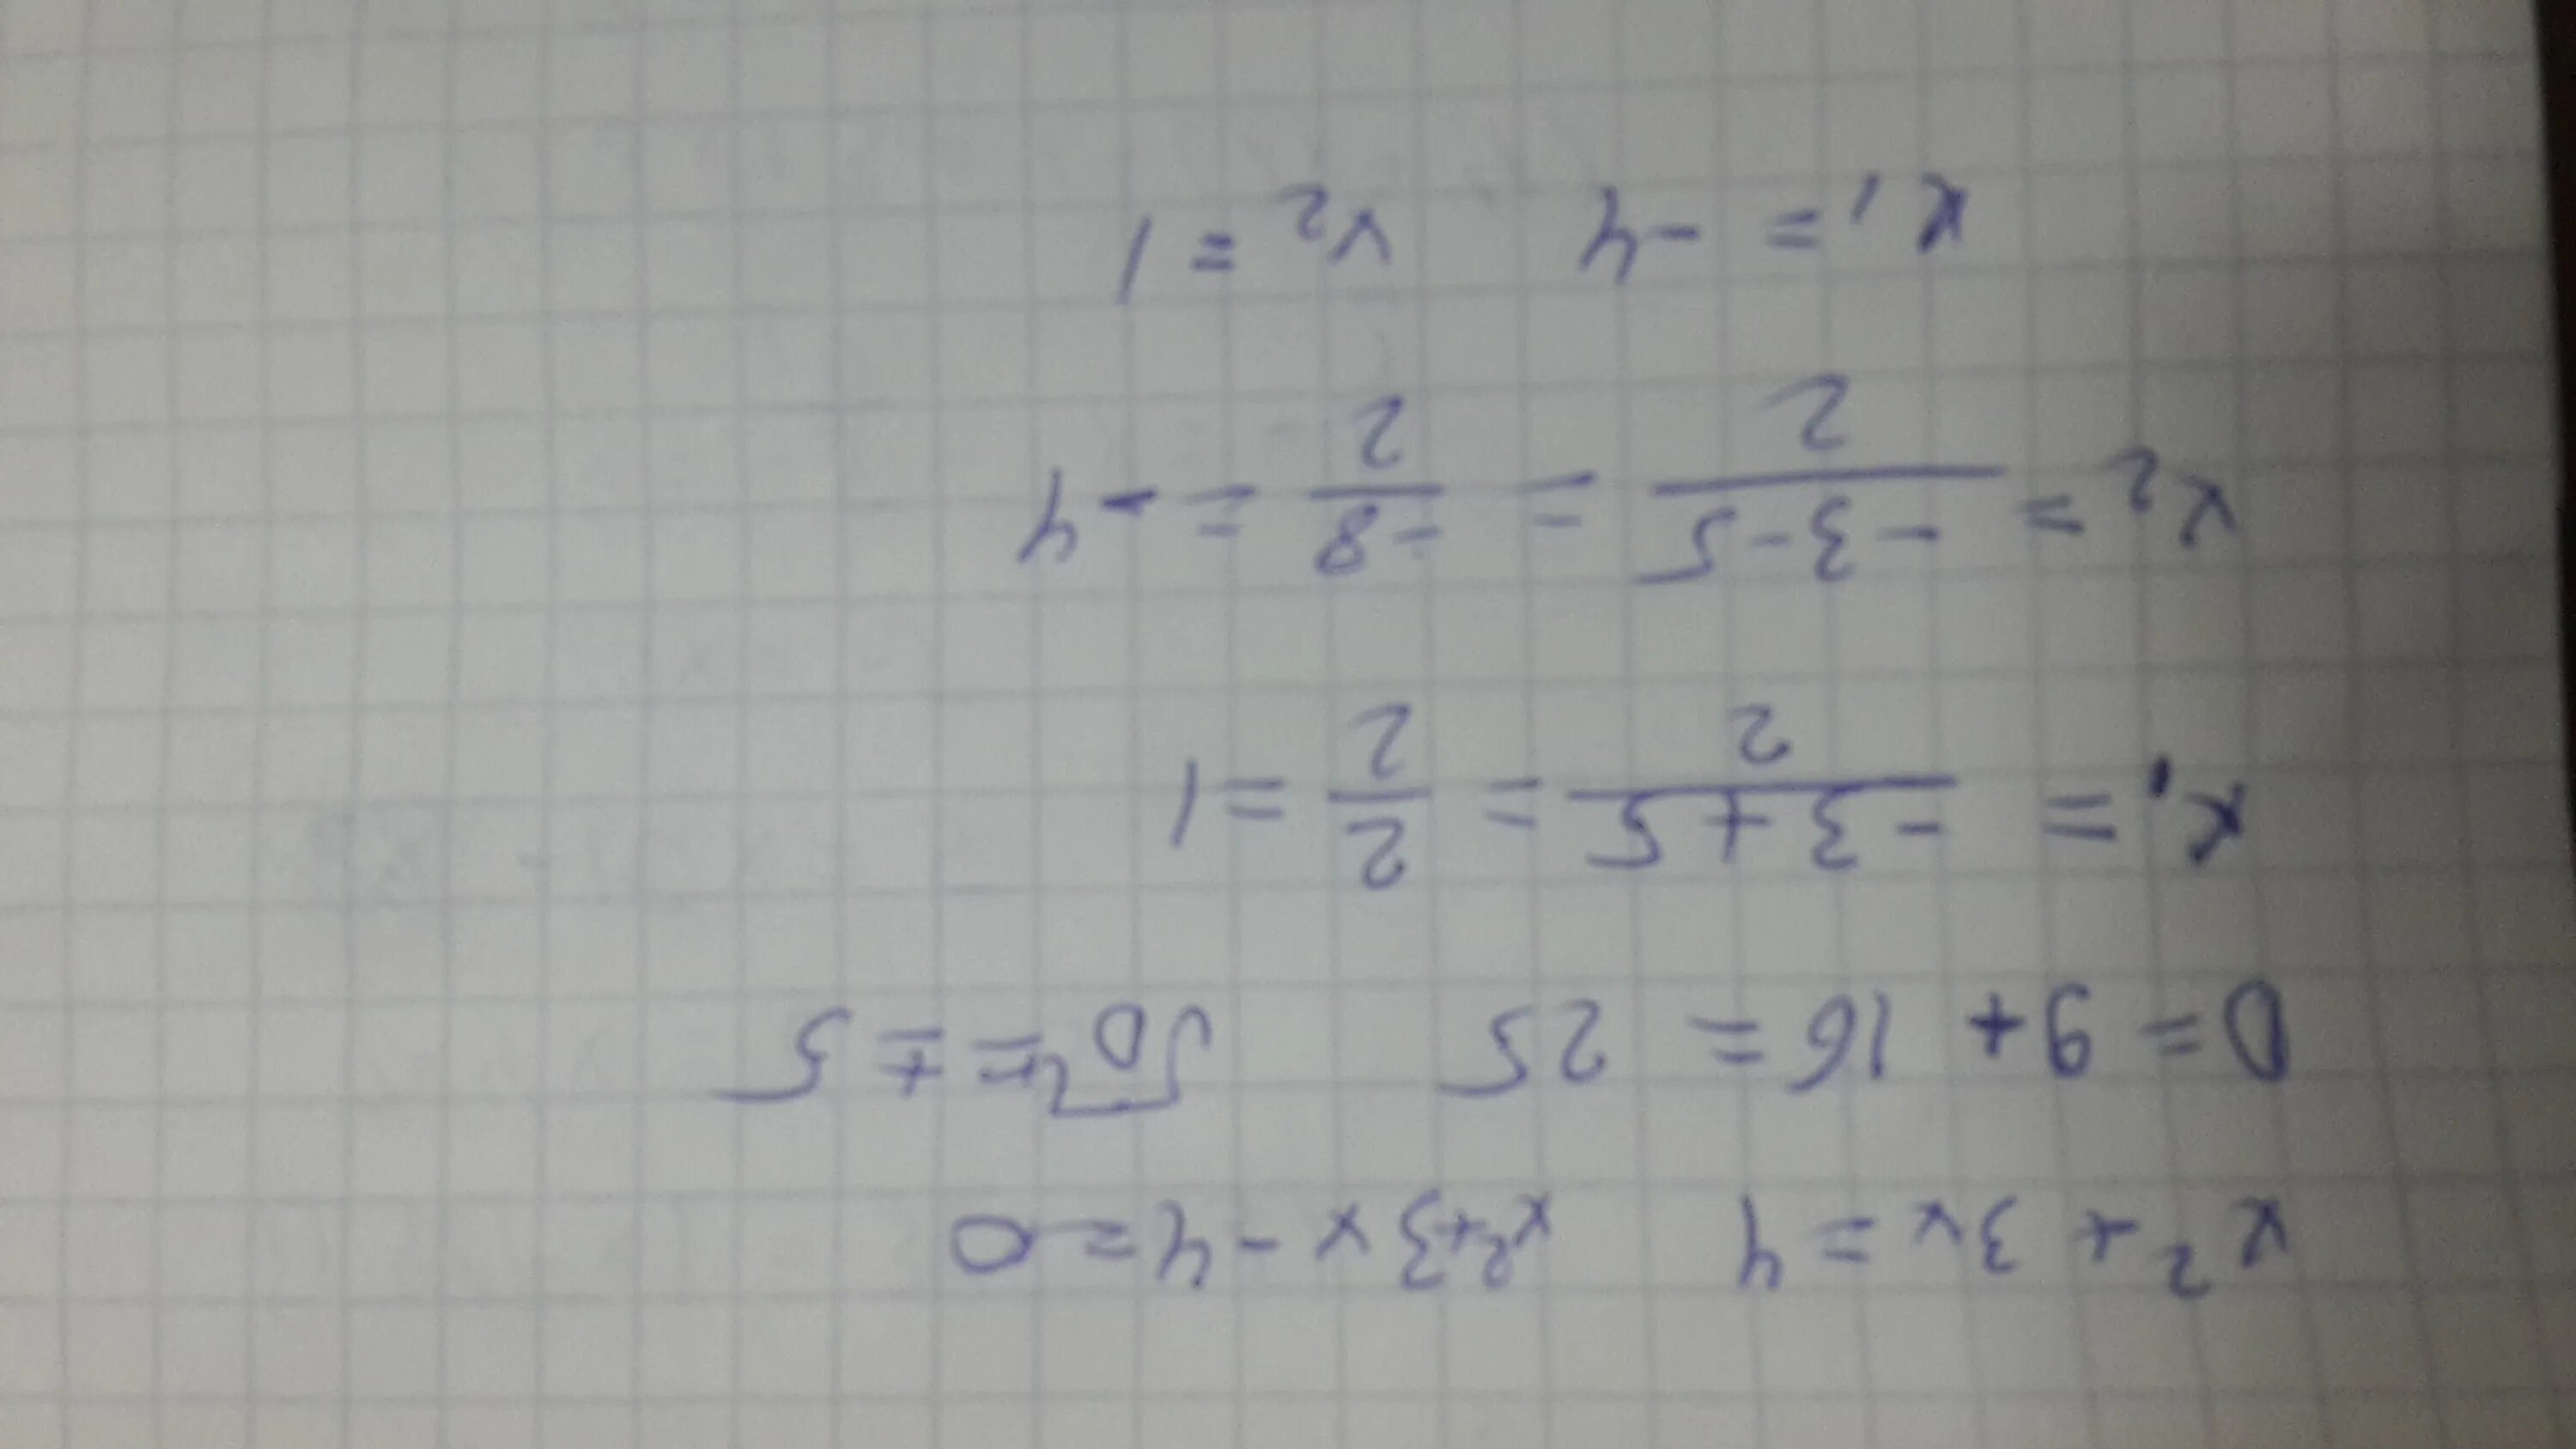 2x 1 3x 4 18. Решение уравнения (8x+x)*4=592. Решите уравнения и запишите корни в порядке возрастания. Запишите корни в порядке возрастания через точку с запятой.